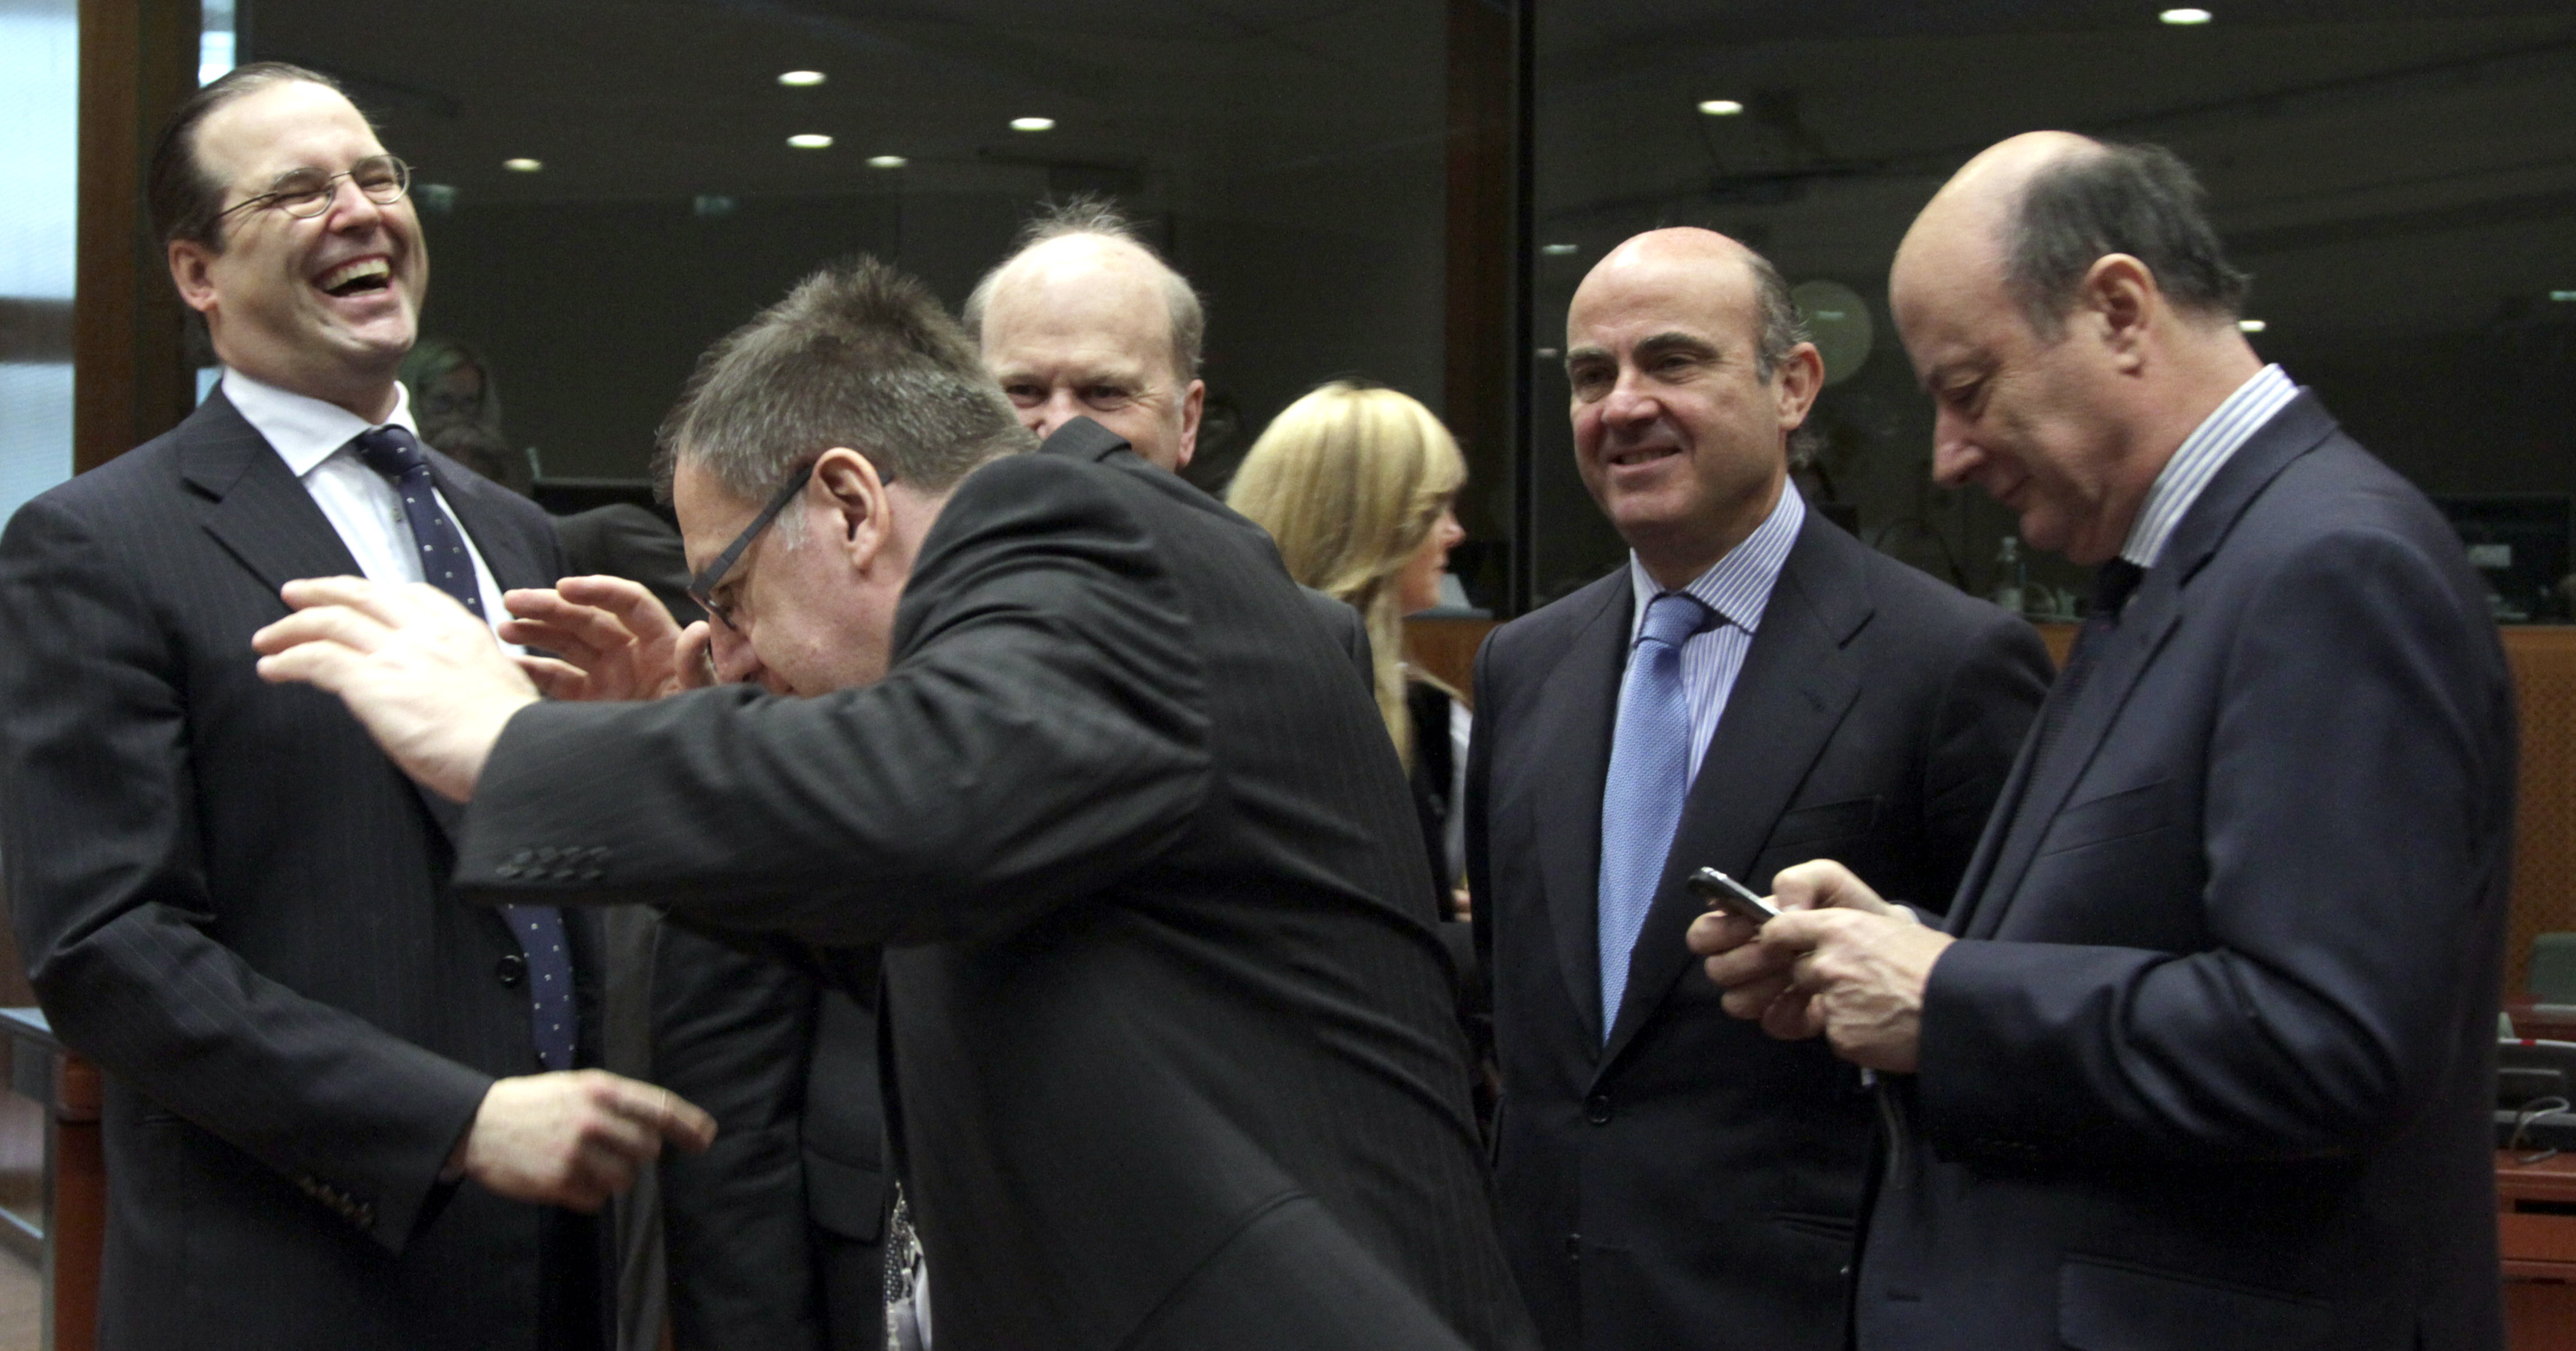 Detta efter en överenskommelse i EU:s ministerråd. Bilden: Anders Borg och andra finansministrar under ett tidigare möte.